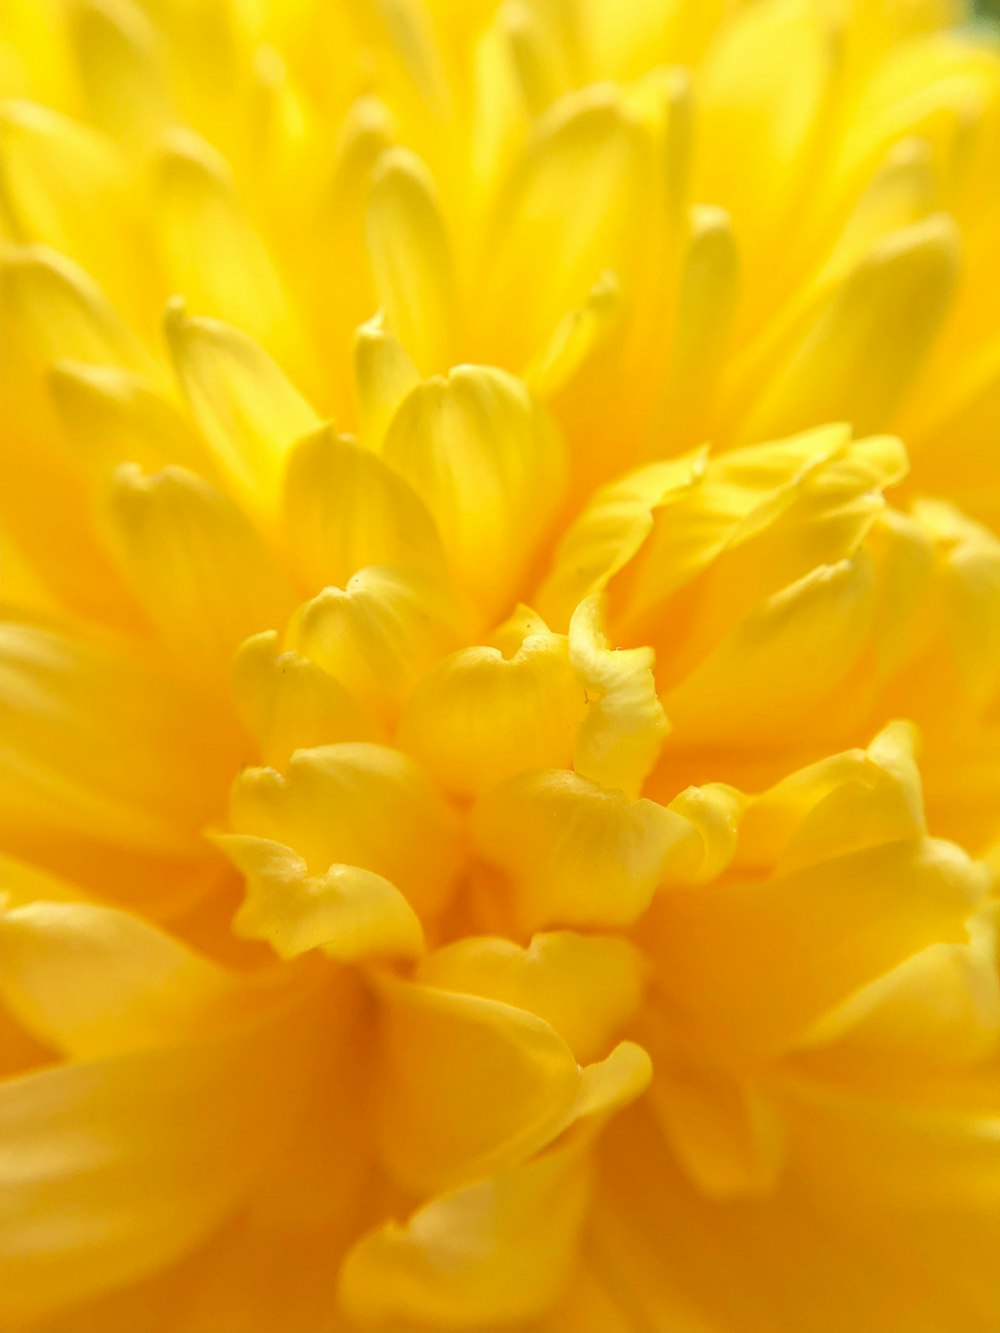 Hoa cúc vàng là biểu tượng của sự giàu có, may mắn và niềm vui trong cả việc trồng trọt và trong cuộc sống hàng ngày của chúng ta. Mỗi lần nhìn thấy hoa cúc vàng, bạn sẽ cảm thấy vui vẻ và đầy hy vọng.